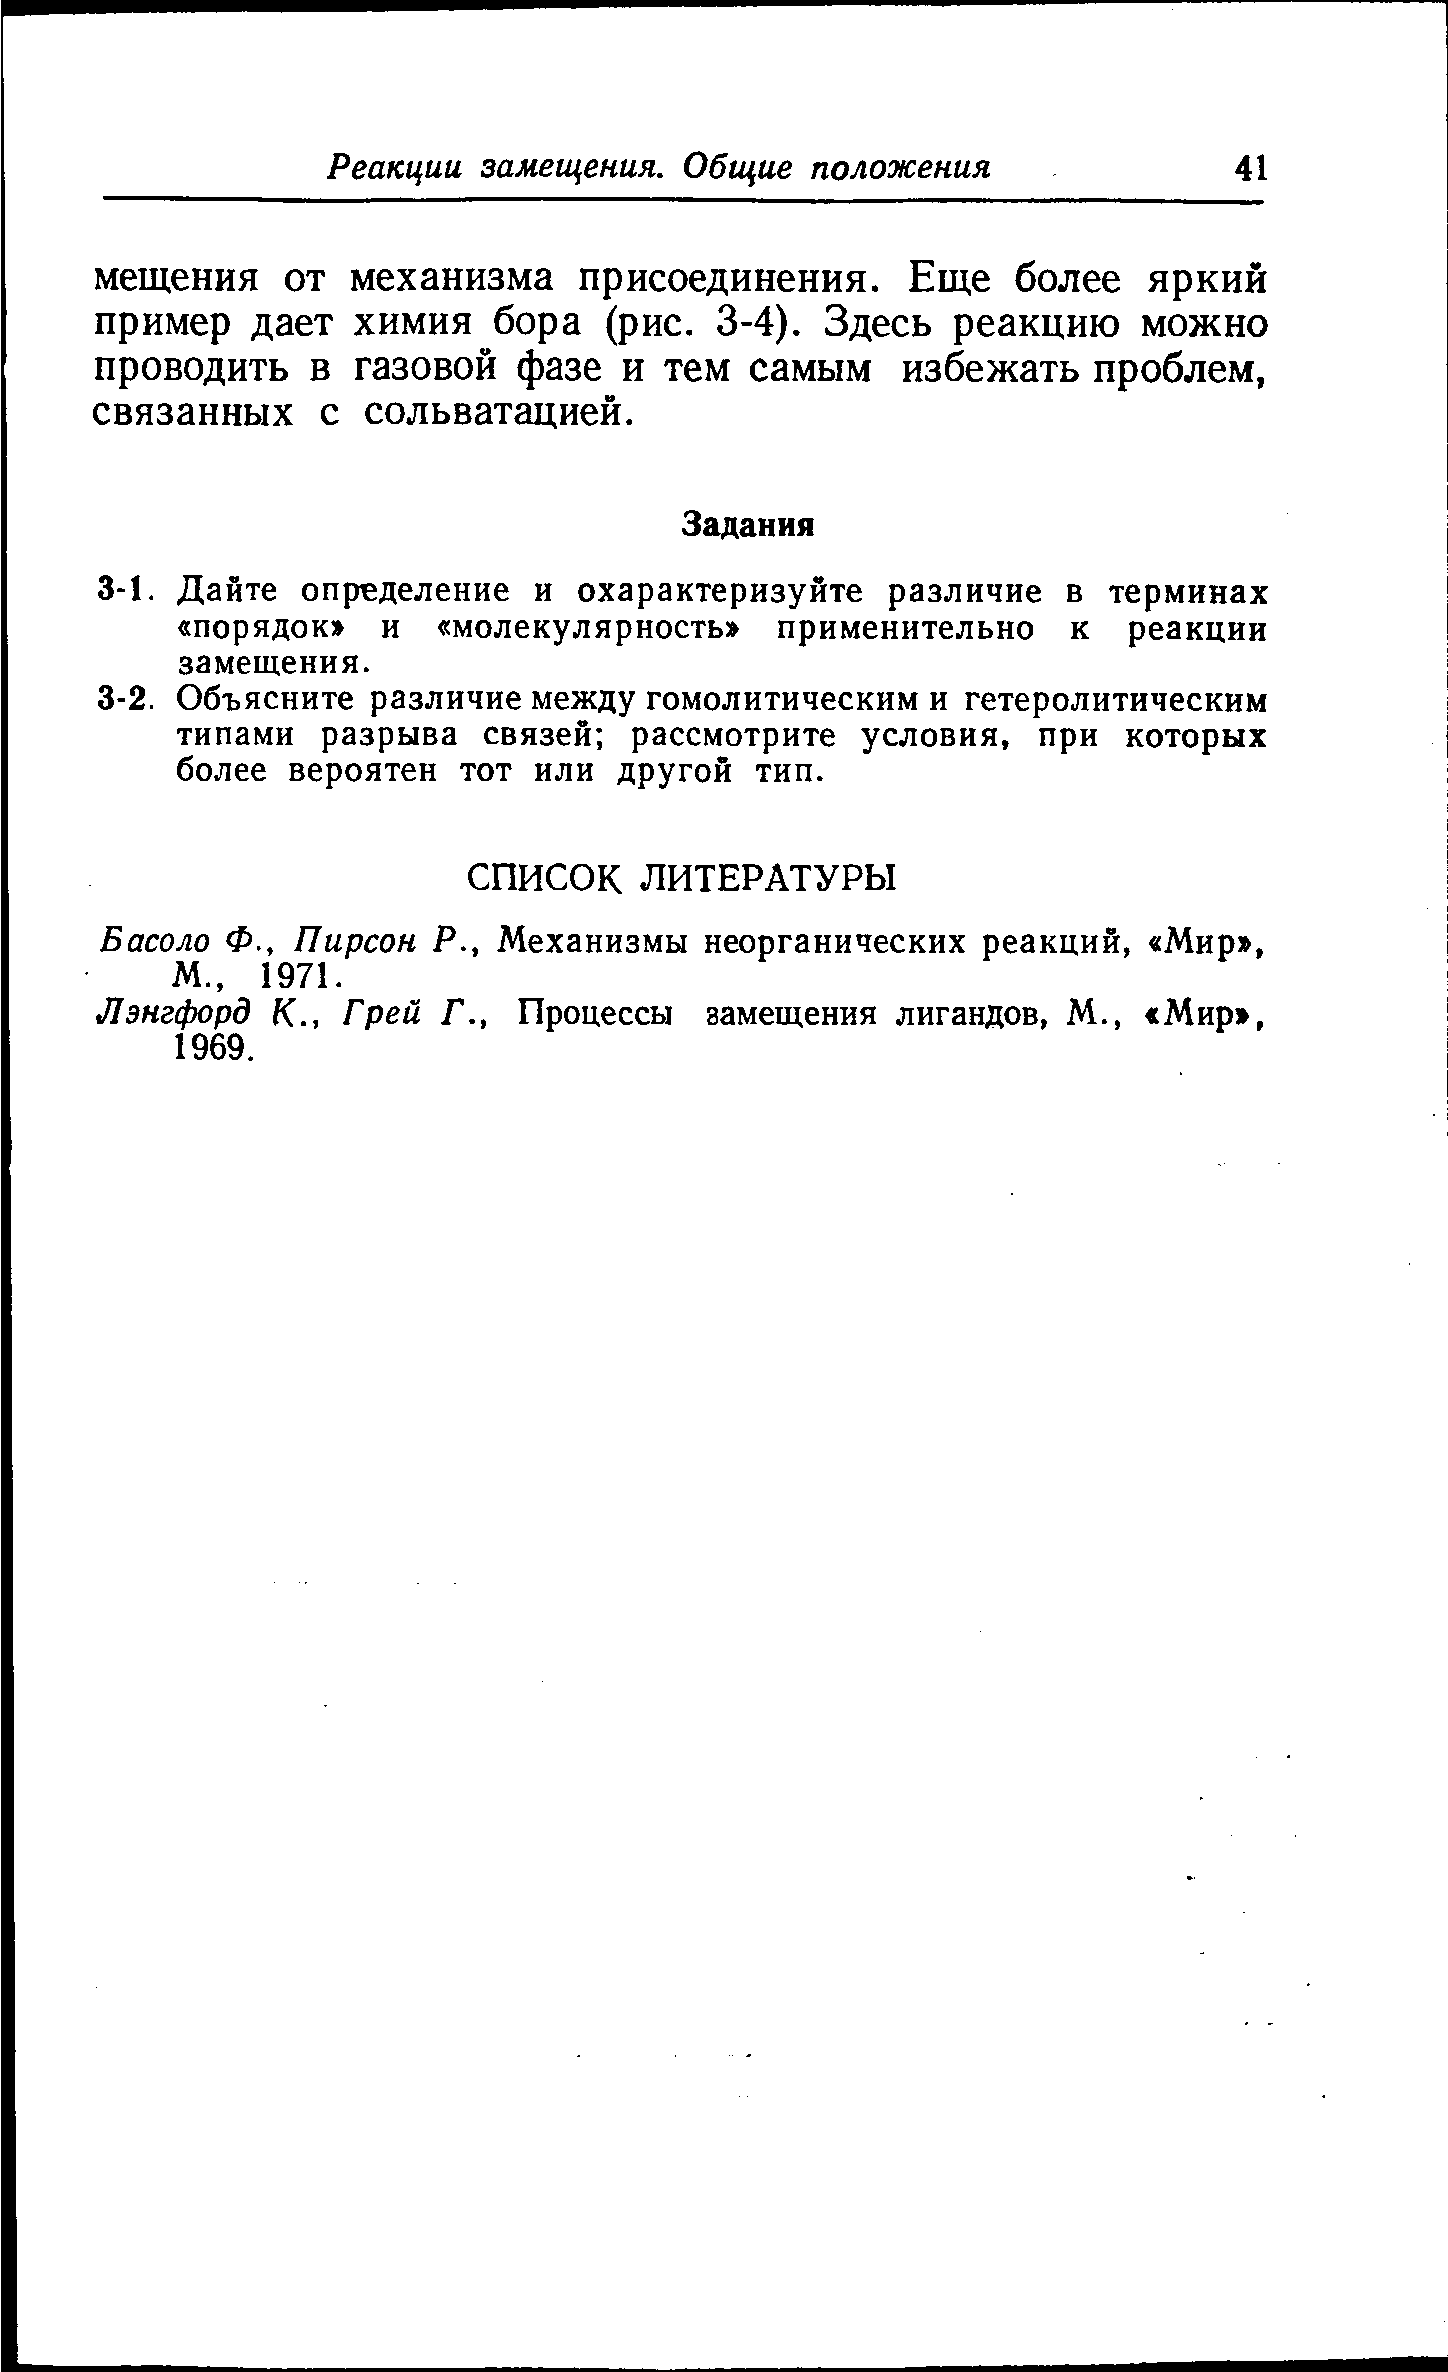 Басоло Ф., Пирсон Р., Механизмы неорганических реакций, Мир , М., 1971.